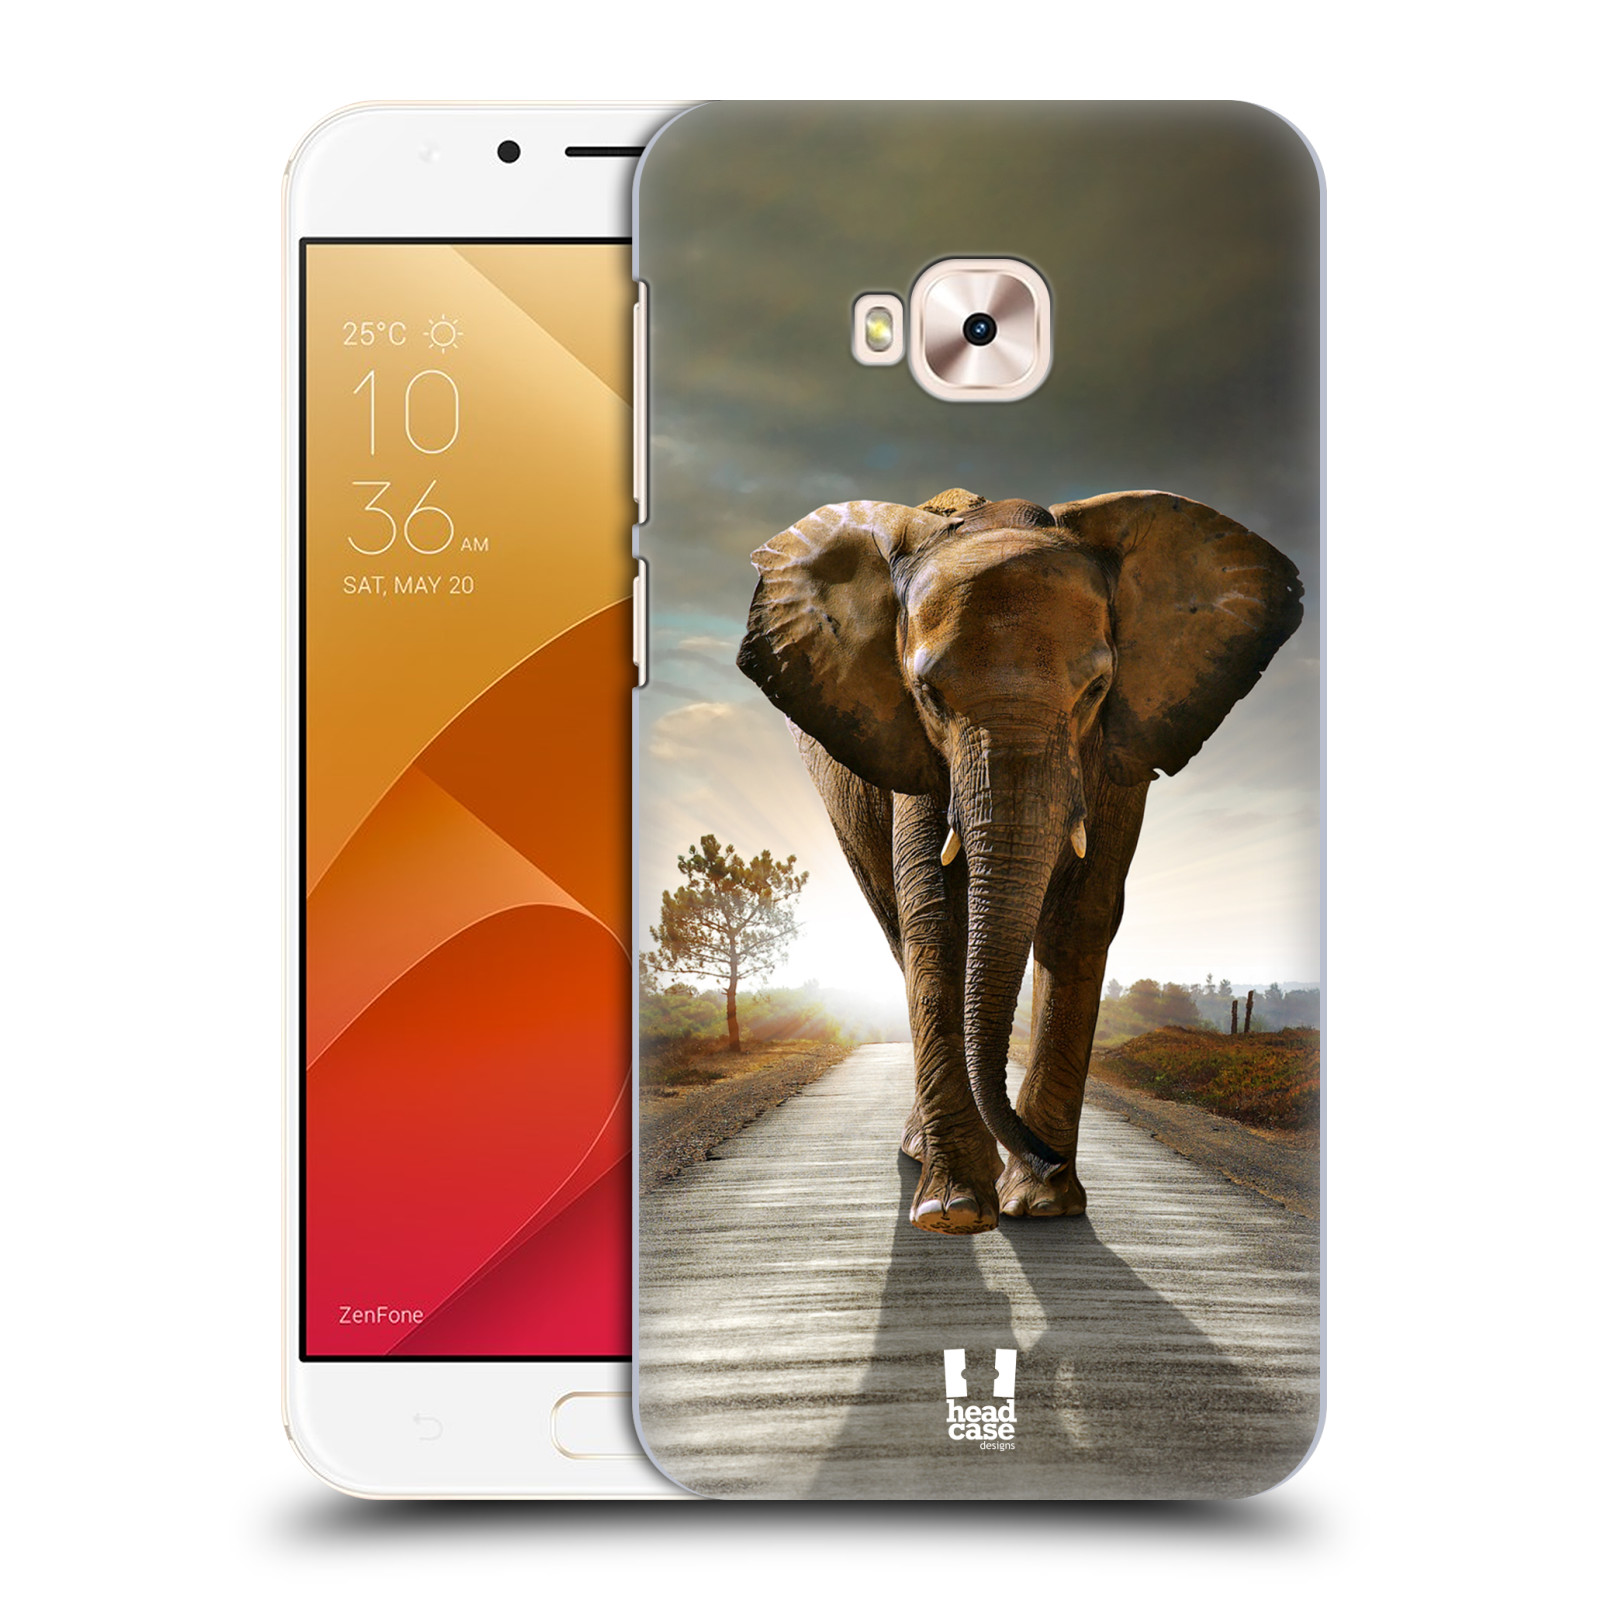 Zadní obal pro mobil Asus Zenfone 4 Selfie Pro ZD552KL - HEAD CASE - Svět zvířat kráčející slon